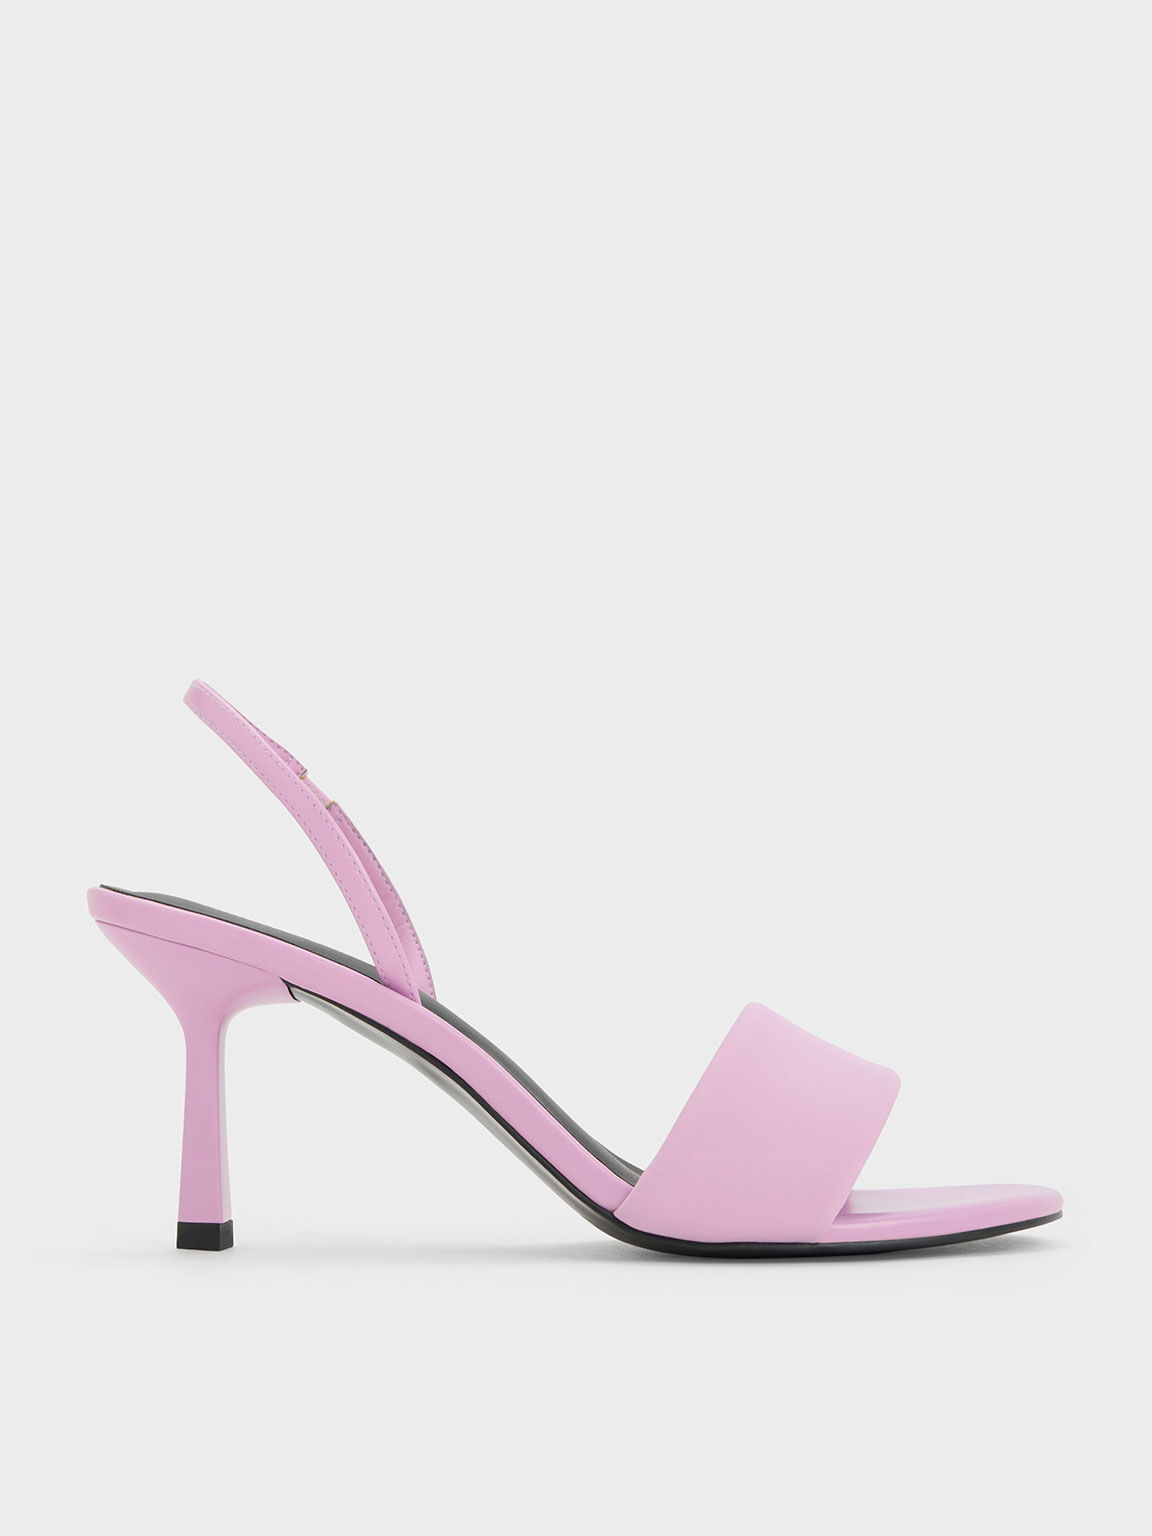 Sale & Clearance Purple Women's Sandals | Dillard's